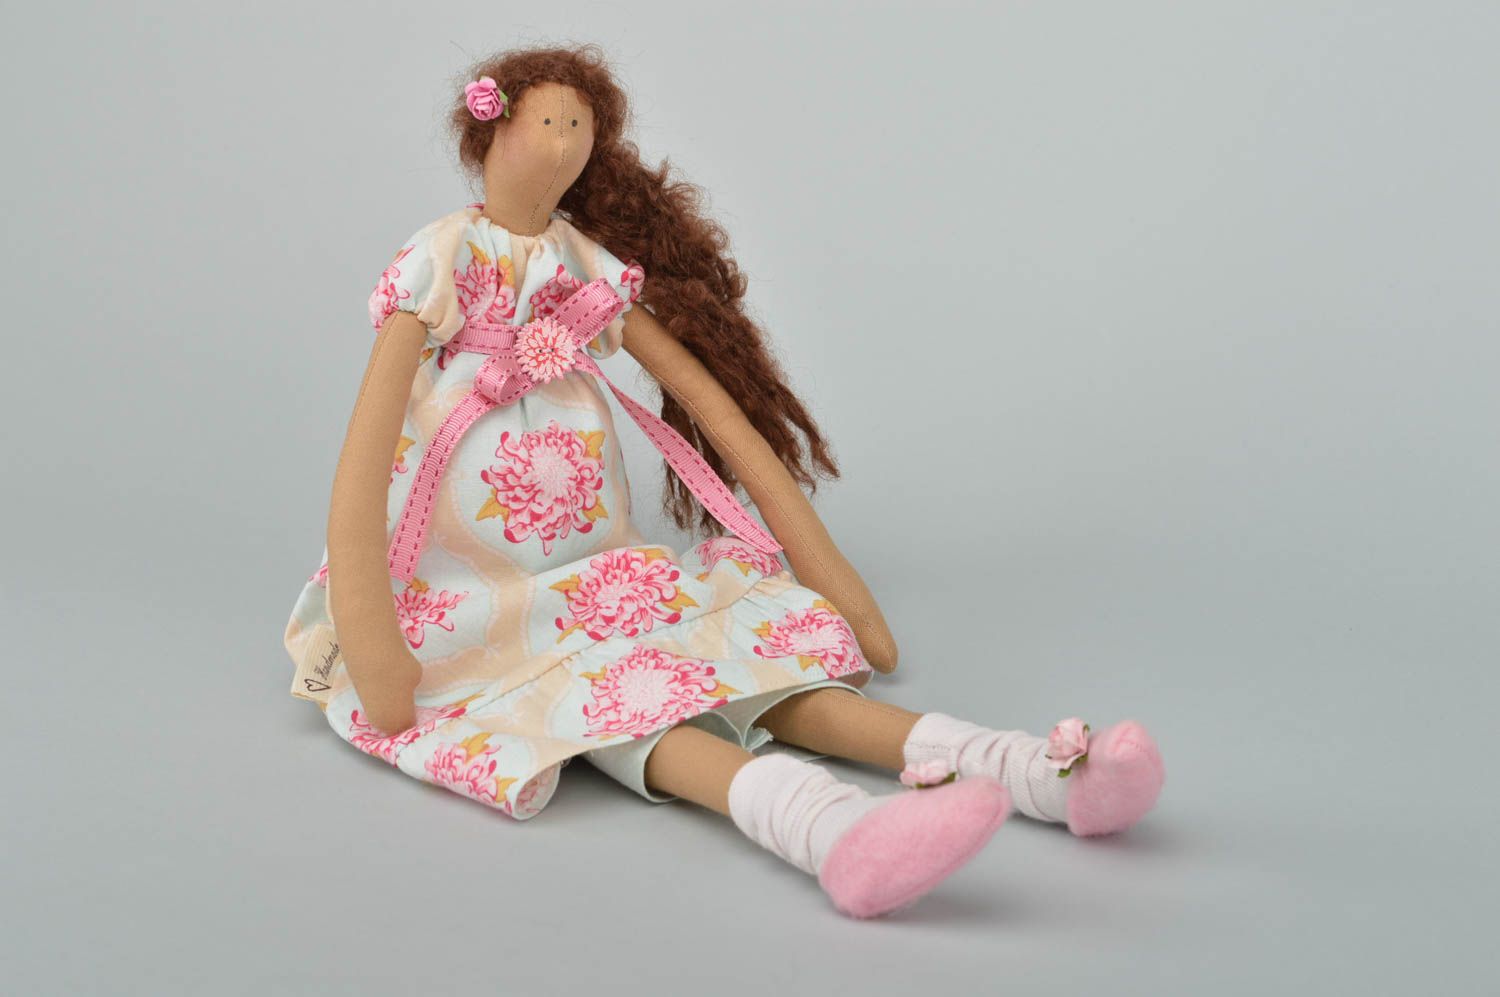 Авторская кукла игрушка ручной работы дизайнерская кукла трикотажная стильная фото 4